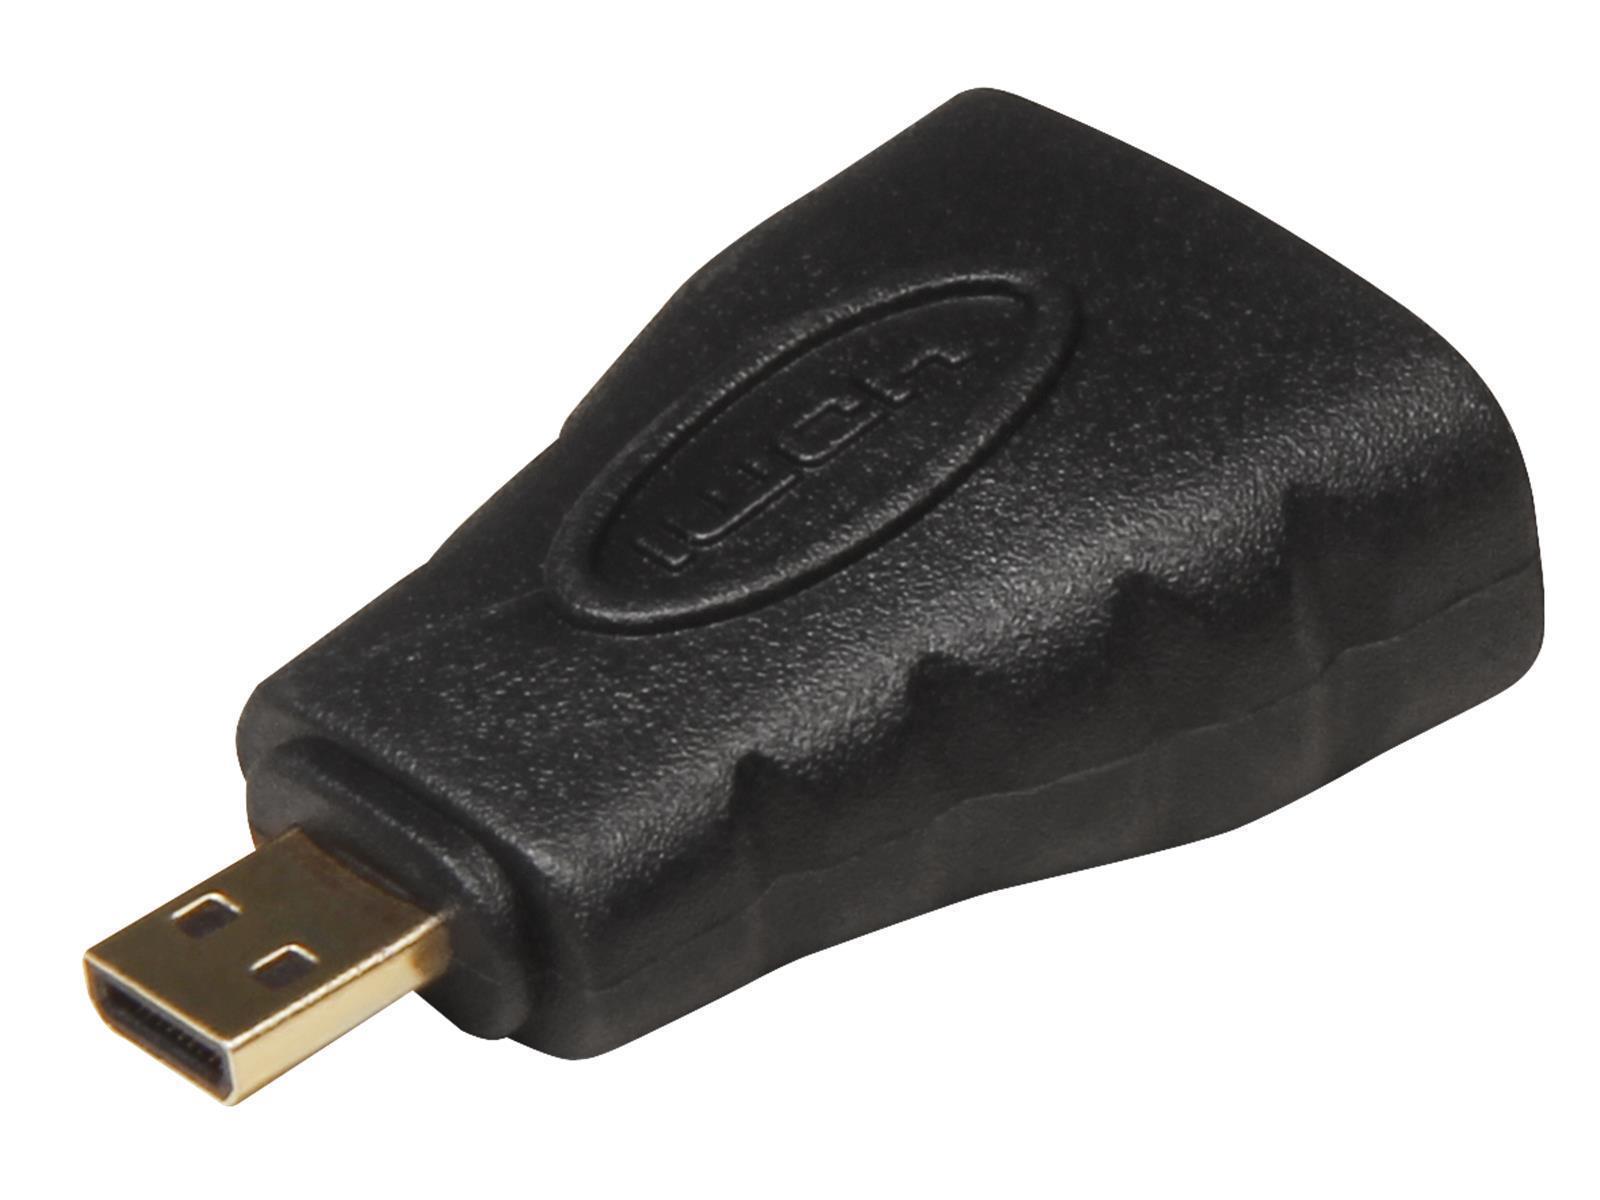 HDMI-Adapter, Micro-HDMI Stecker -> HDMI Buchse